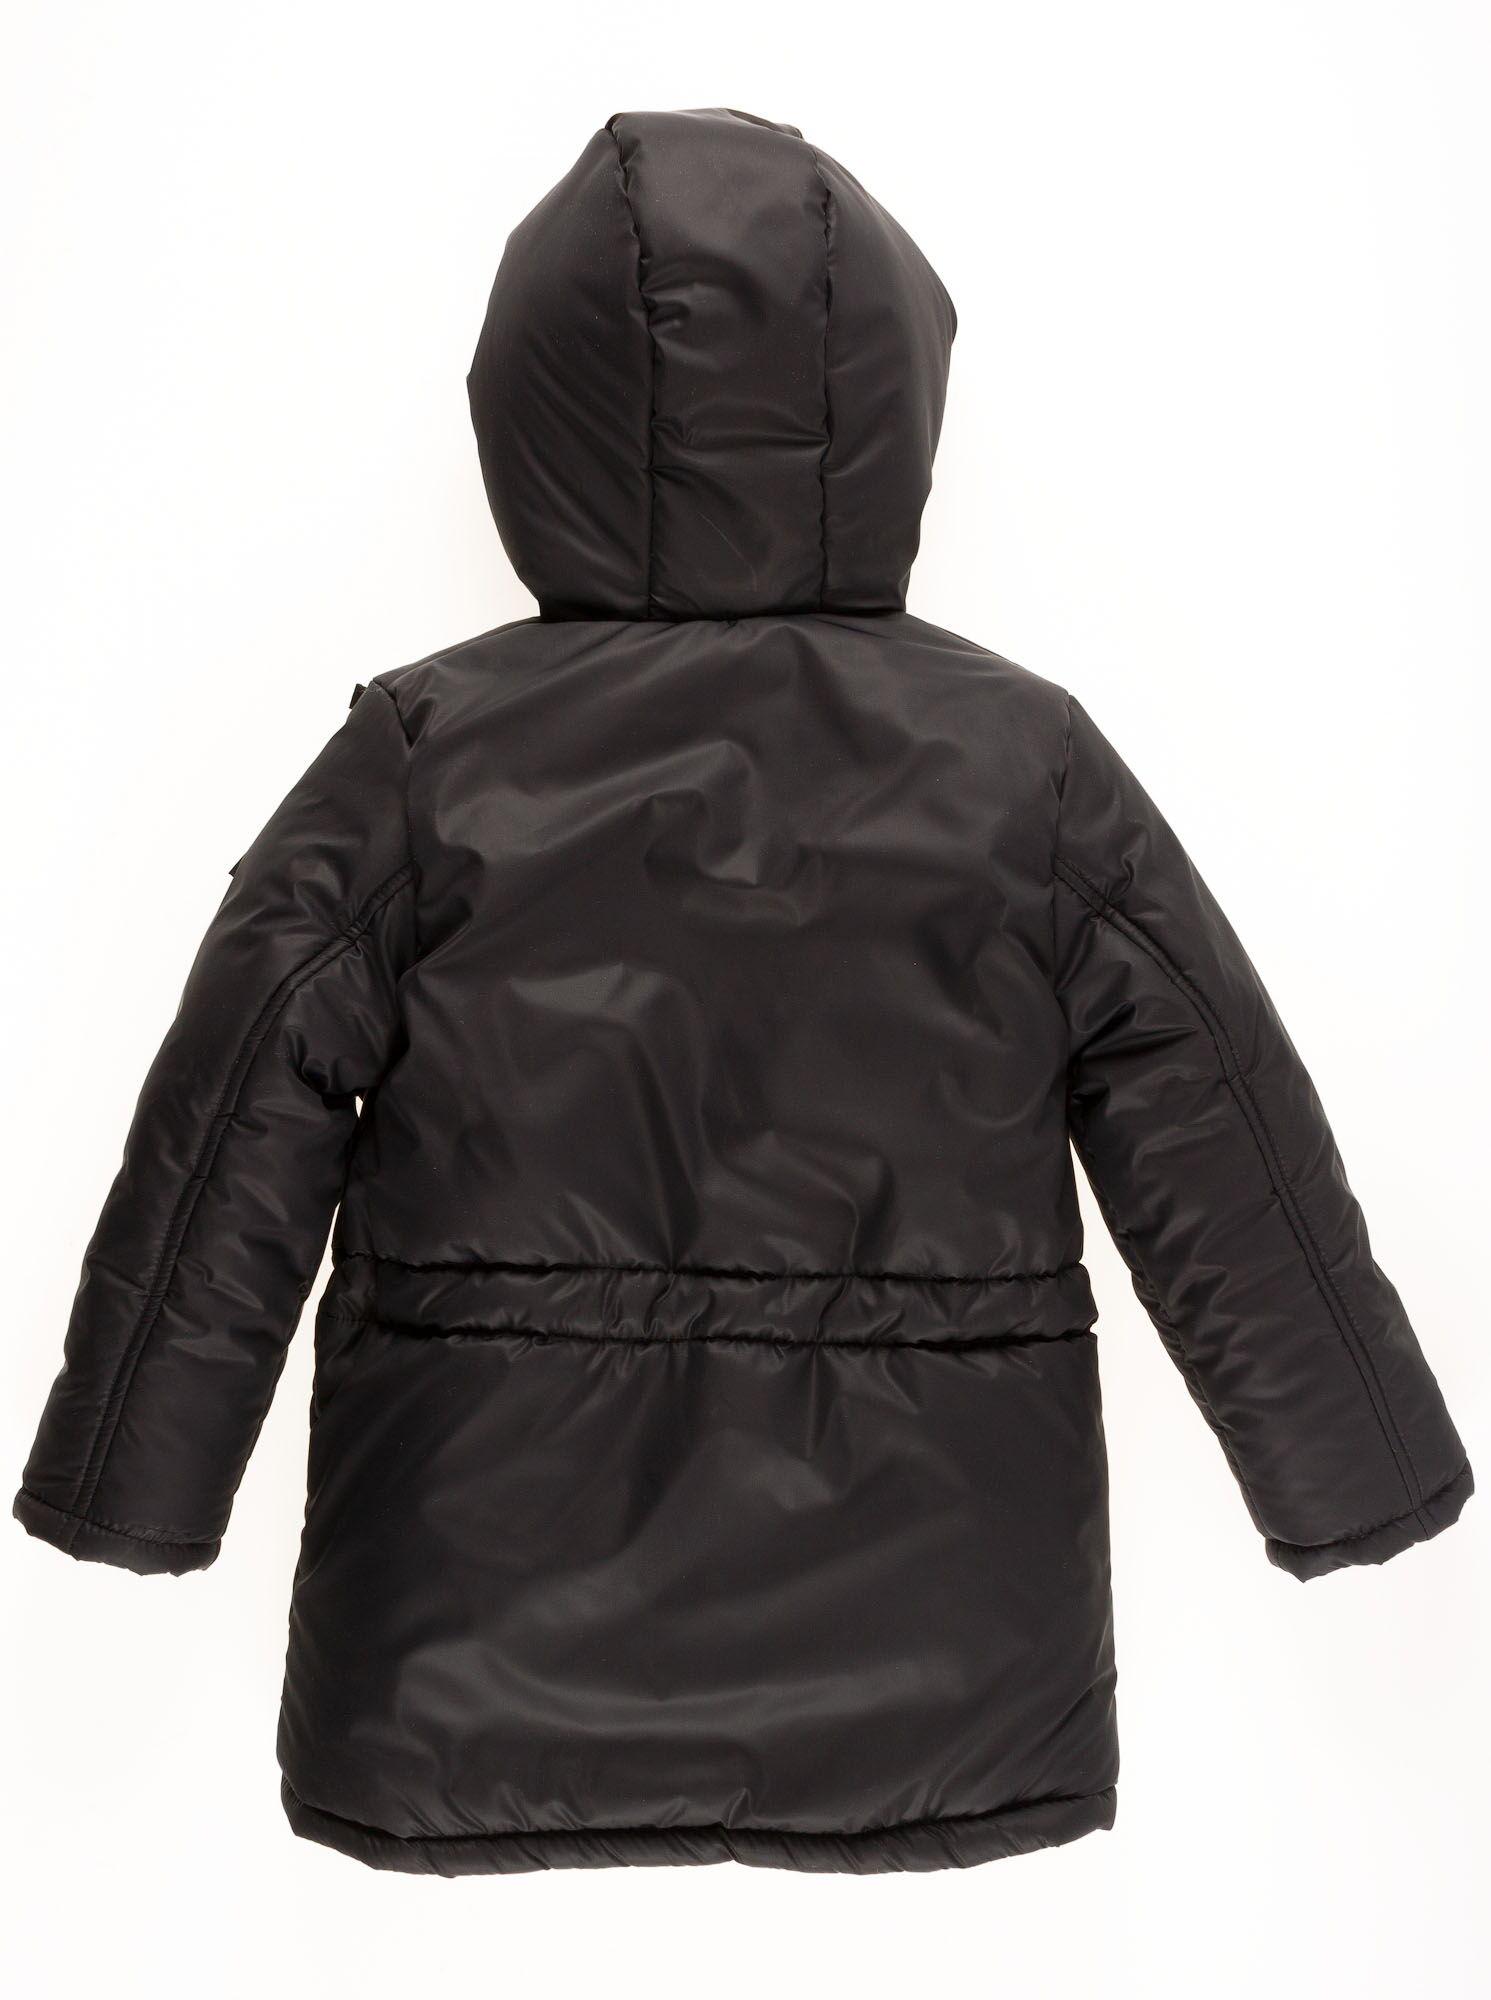 Куртка удлиненная зимняя для мальчика Одягайко черная 20095О - размеры